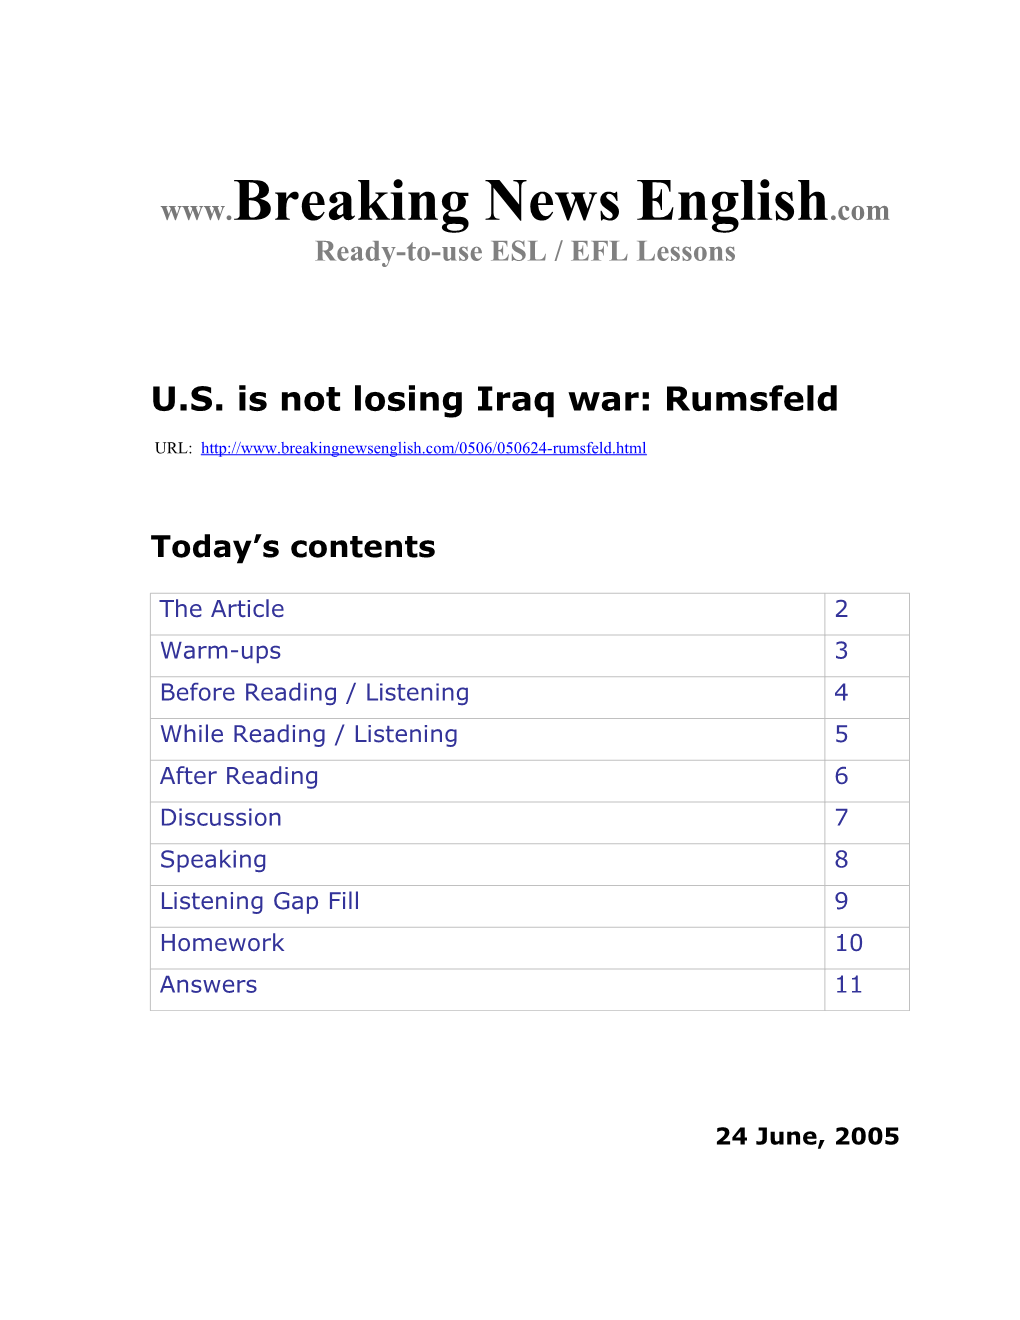 U.S. Is Not Losing Iraq War: Rumsfeld